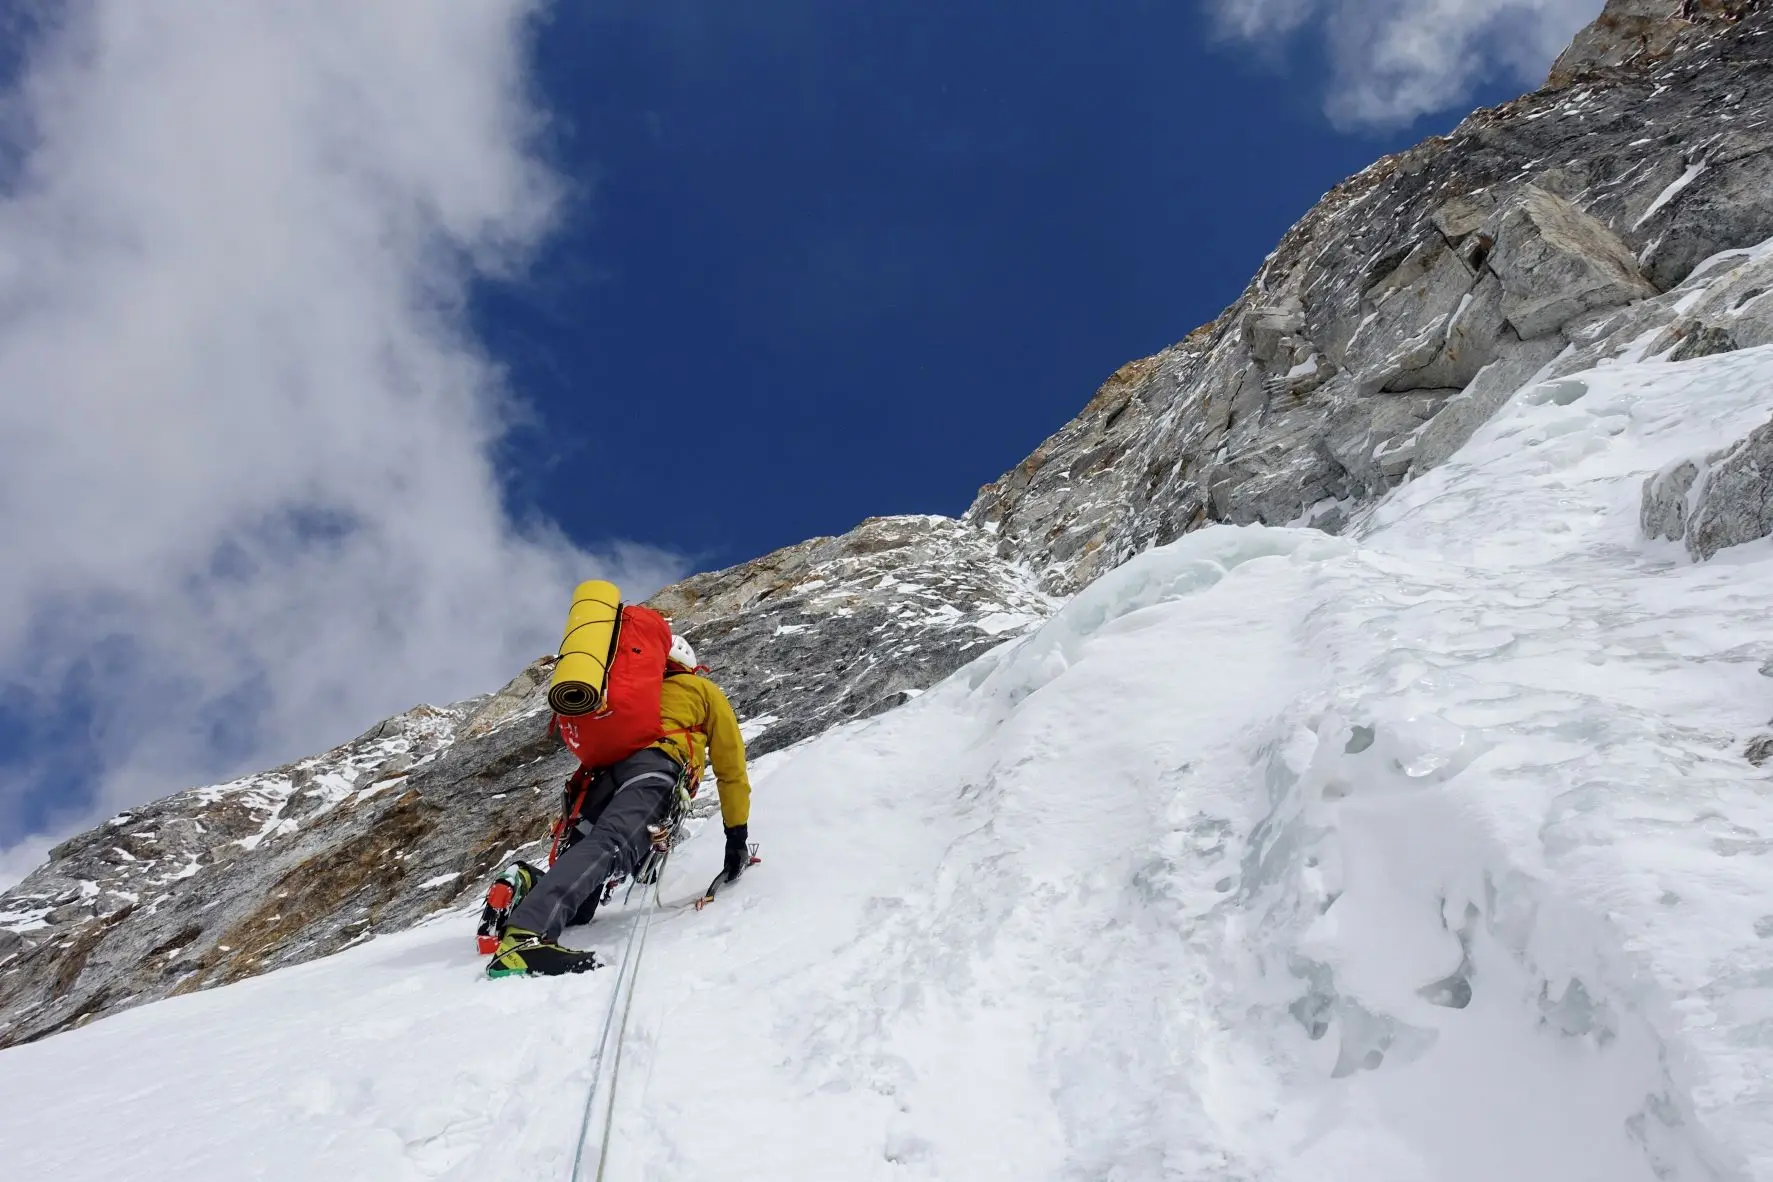 Пол Рамсден (Paul Ramsden) та Тім Міллер (Tim Miller) у сходженні за маршрутом "The Phantom Line" північною стіною гори Джугал Спайр (Jugal Spire, 6563 метрів) у Непалі